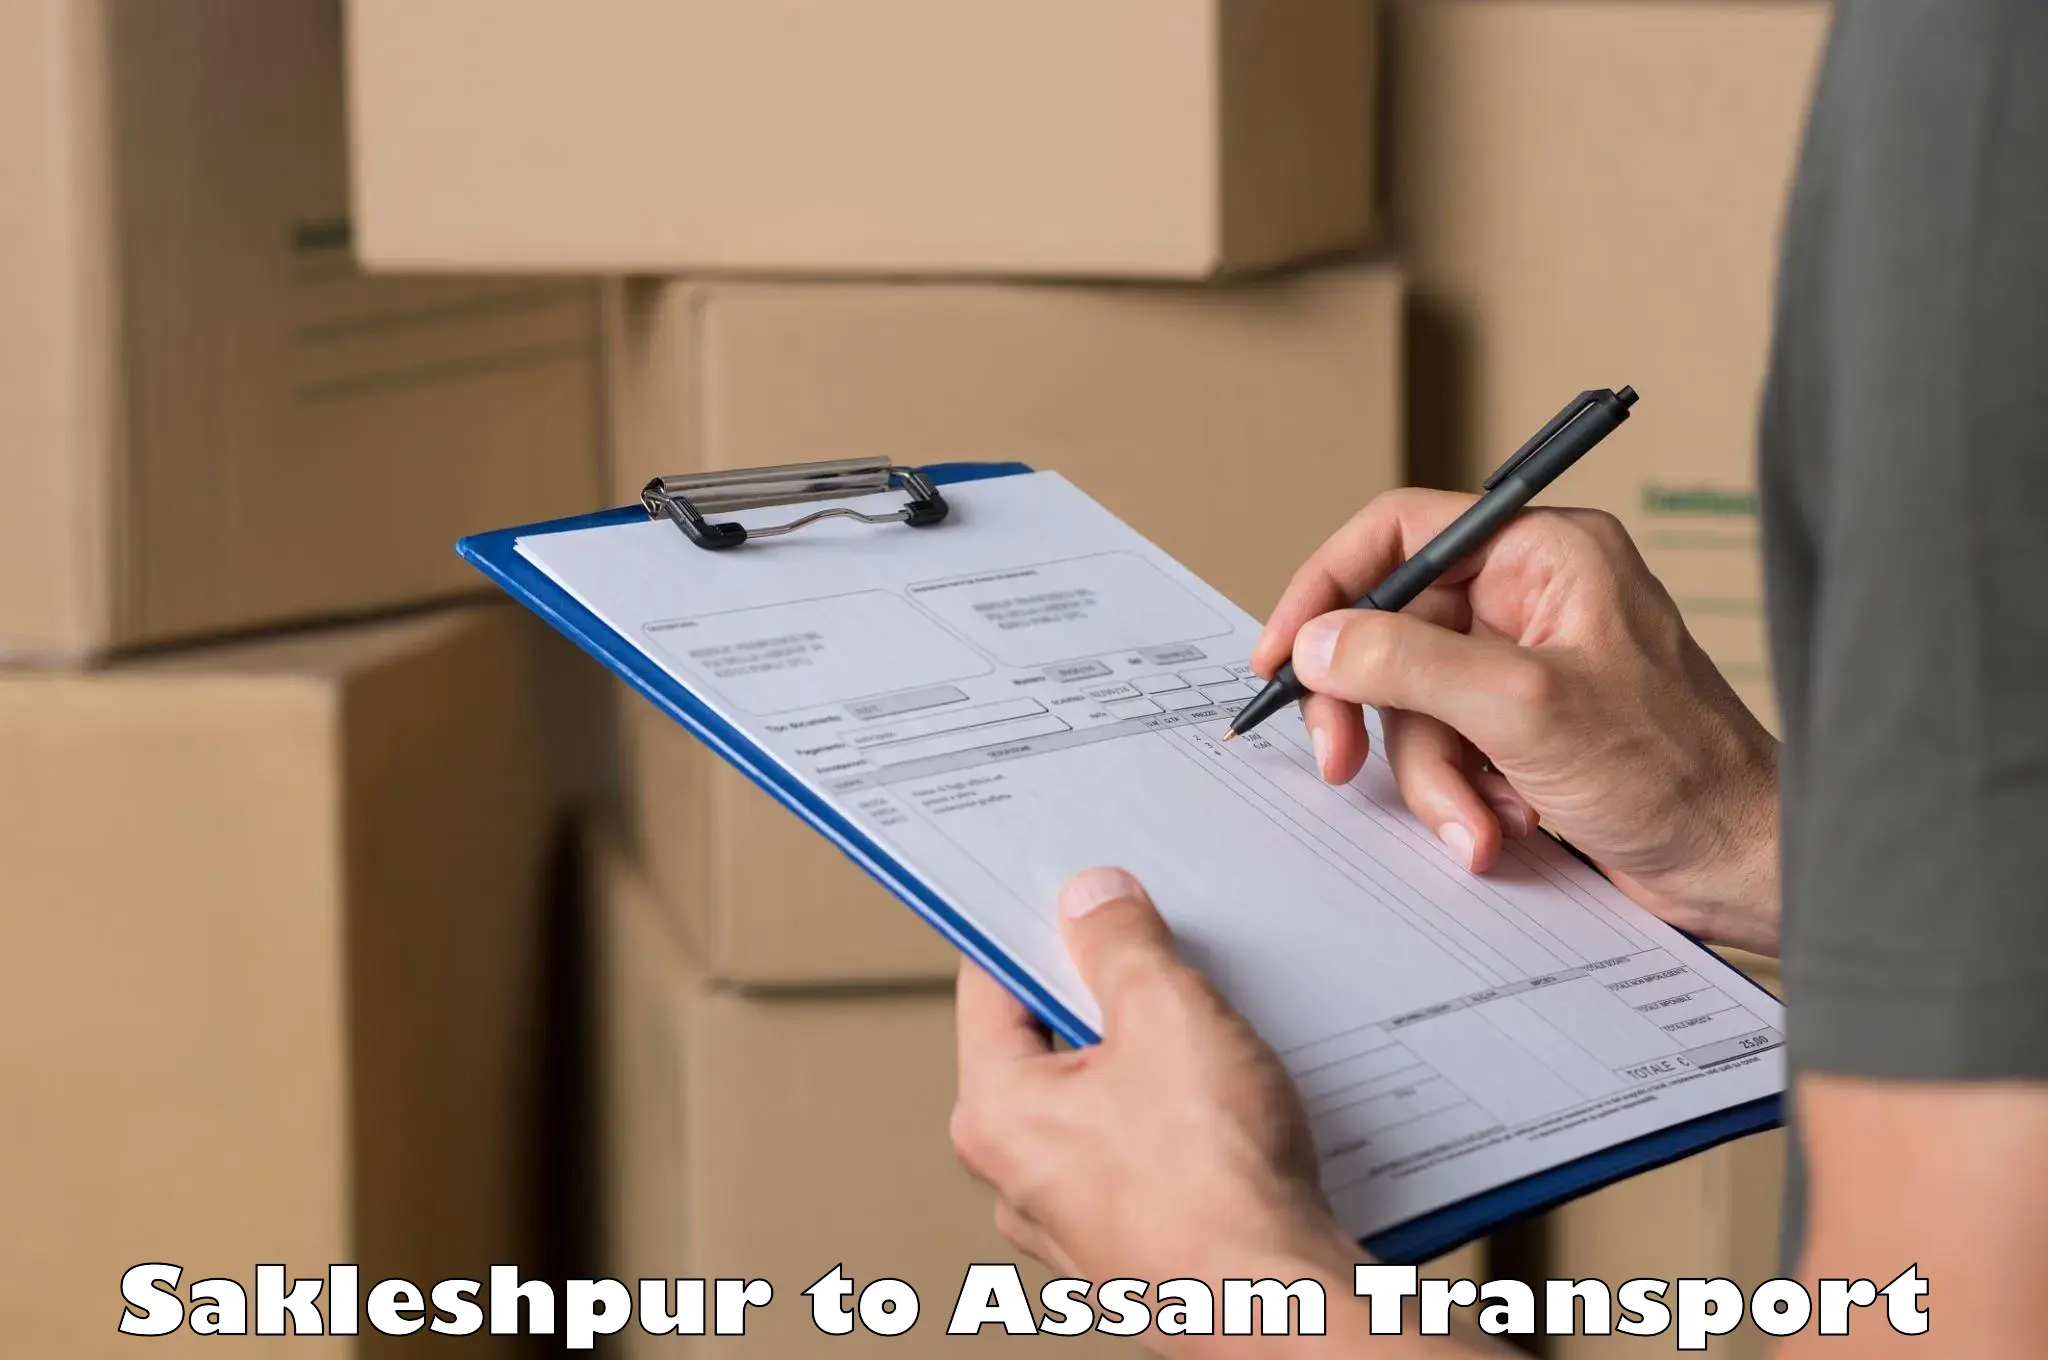 Furniture transport service Sakleshpur to Noonmati